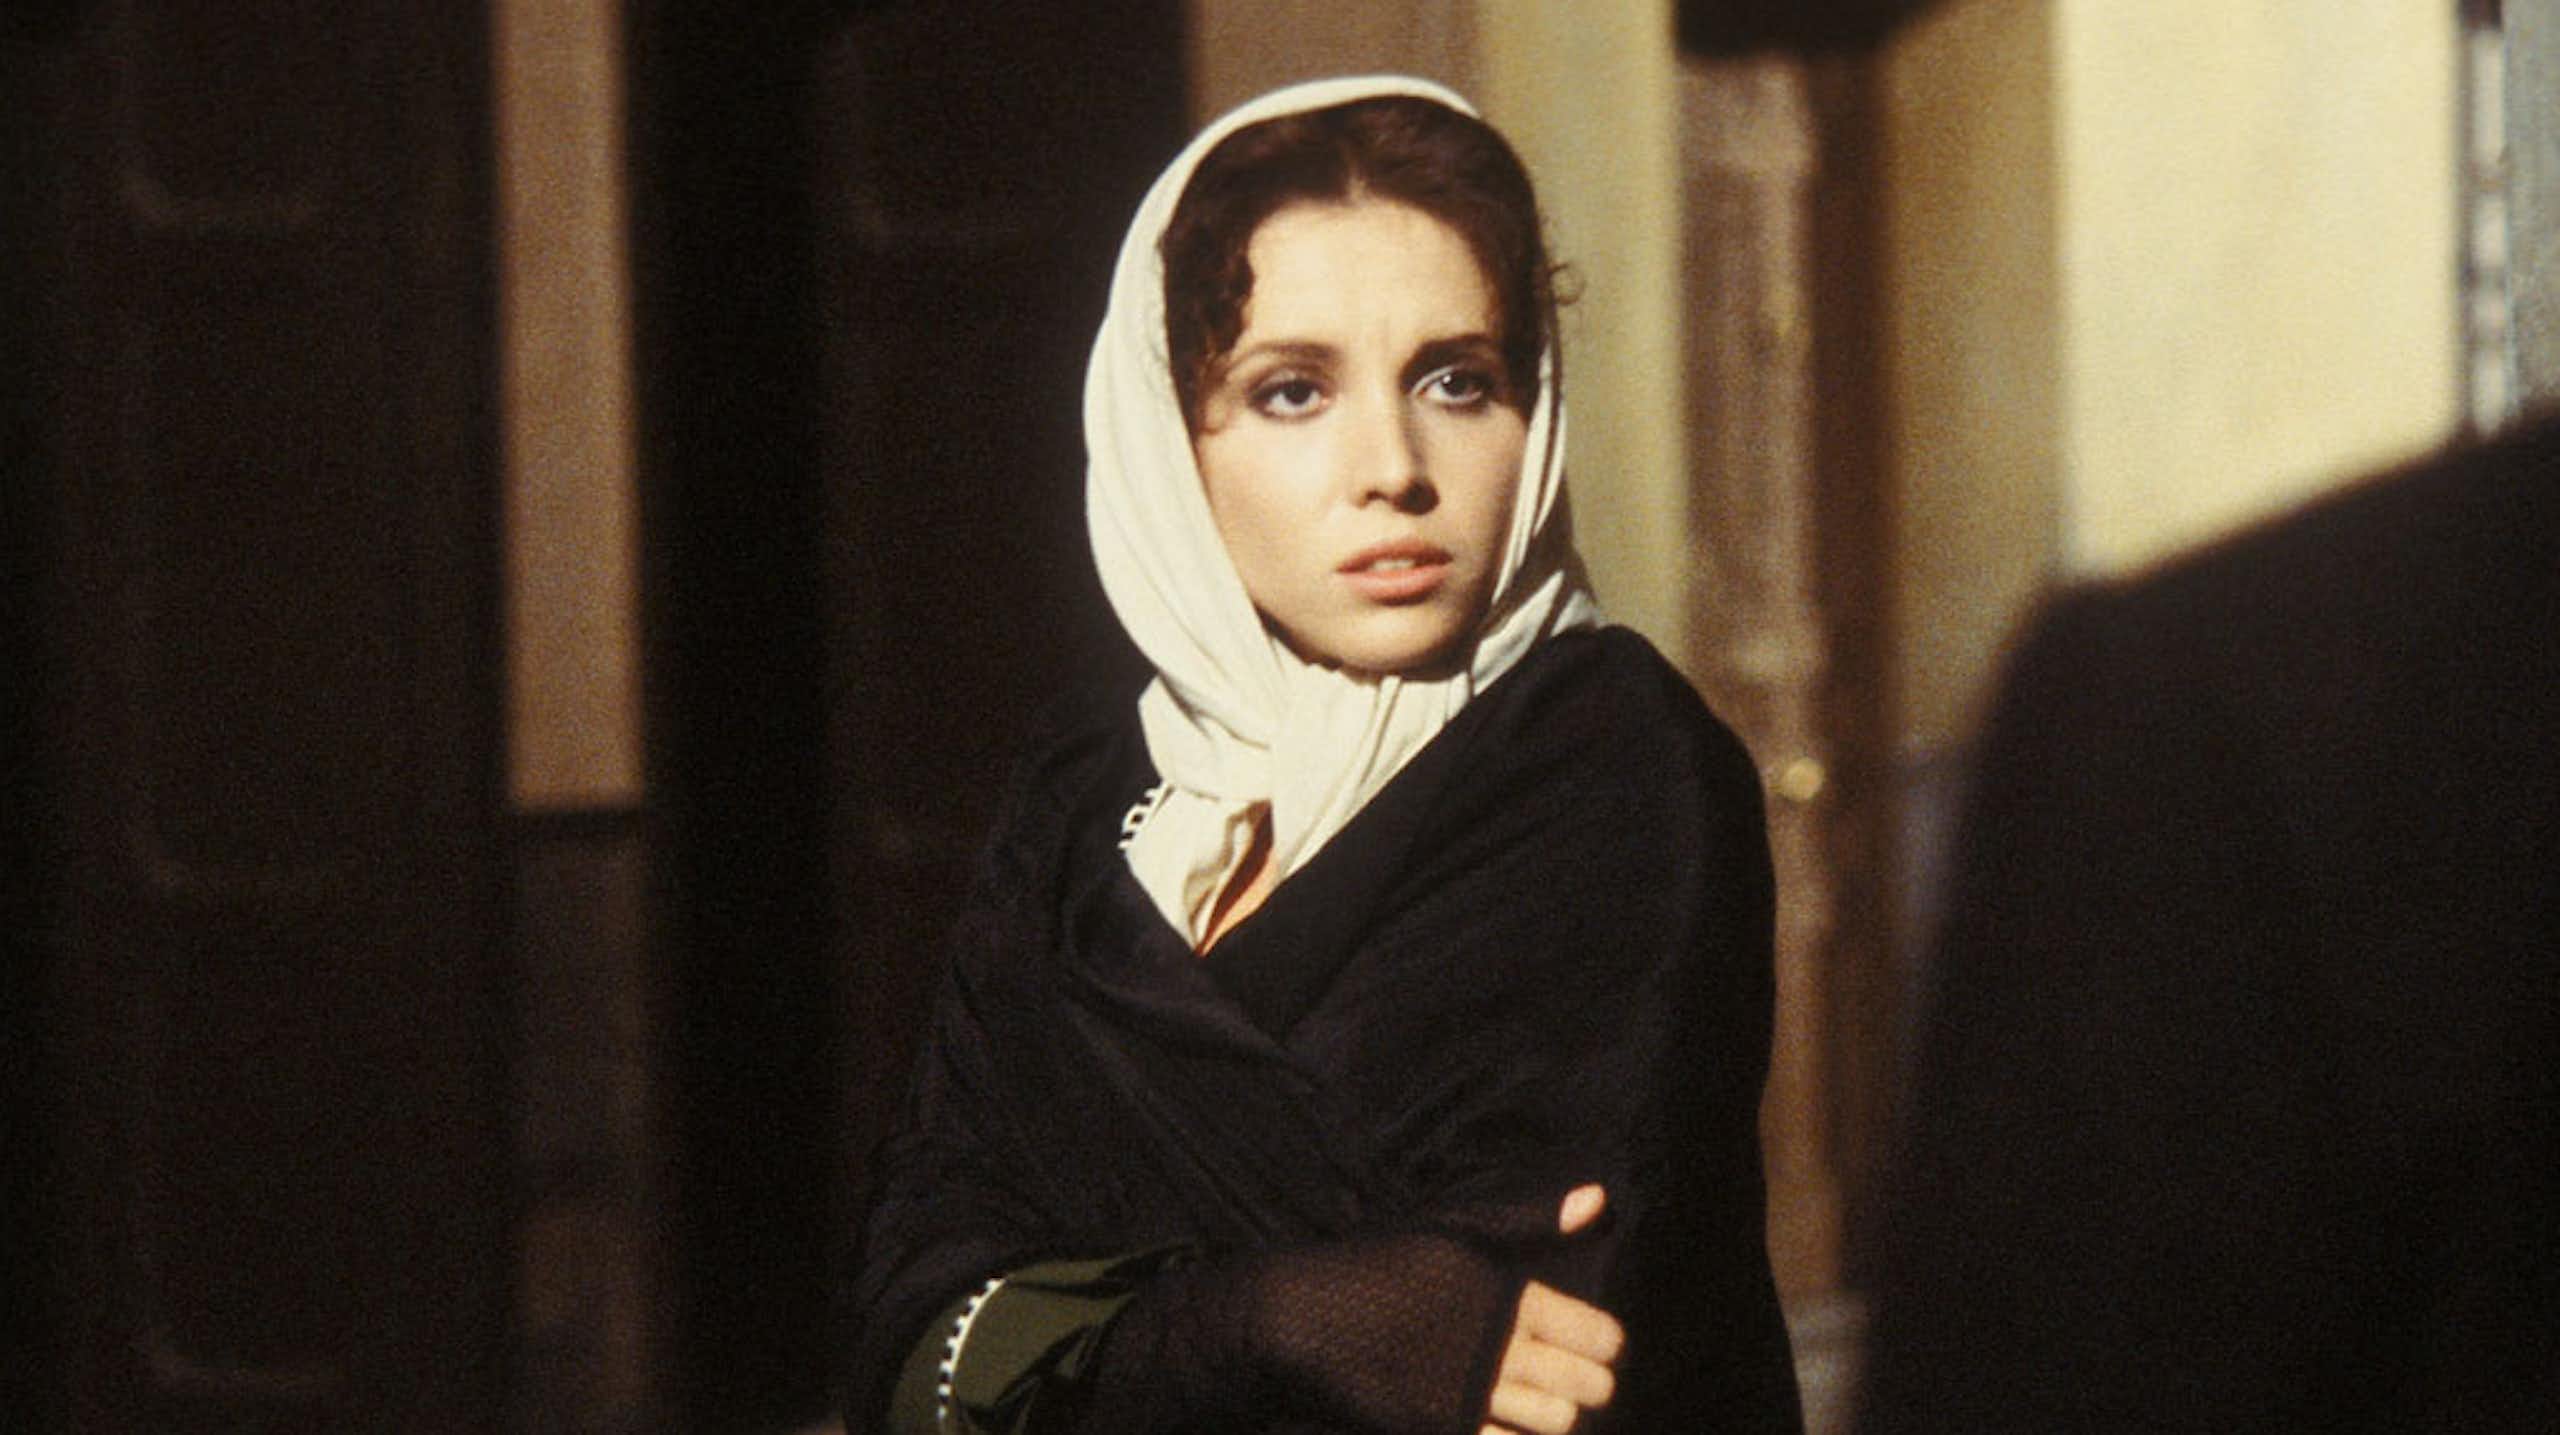 Ana Belén, interpretando a Fortunata en un fotograma de la serie de TVE 'Fortunata y Jacinta', dirigida por Mario Camus.